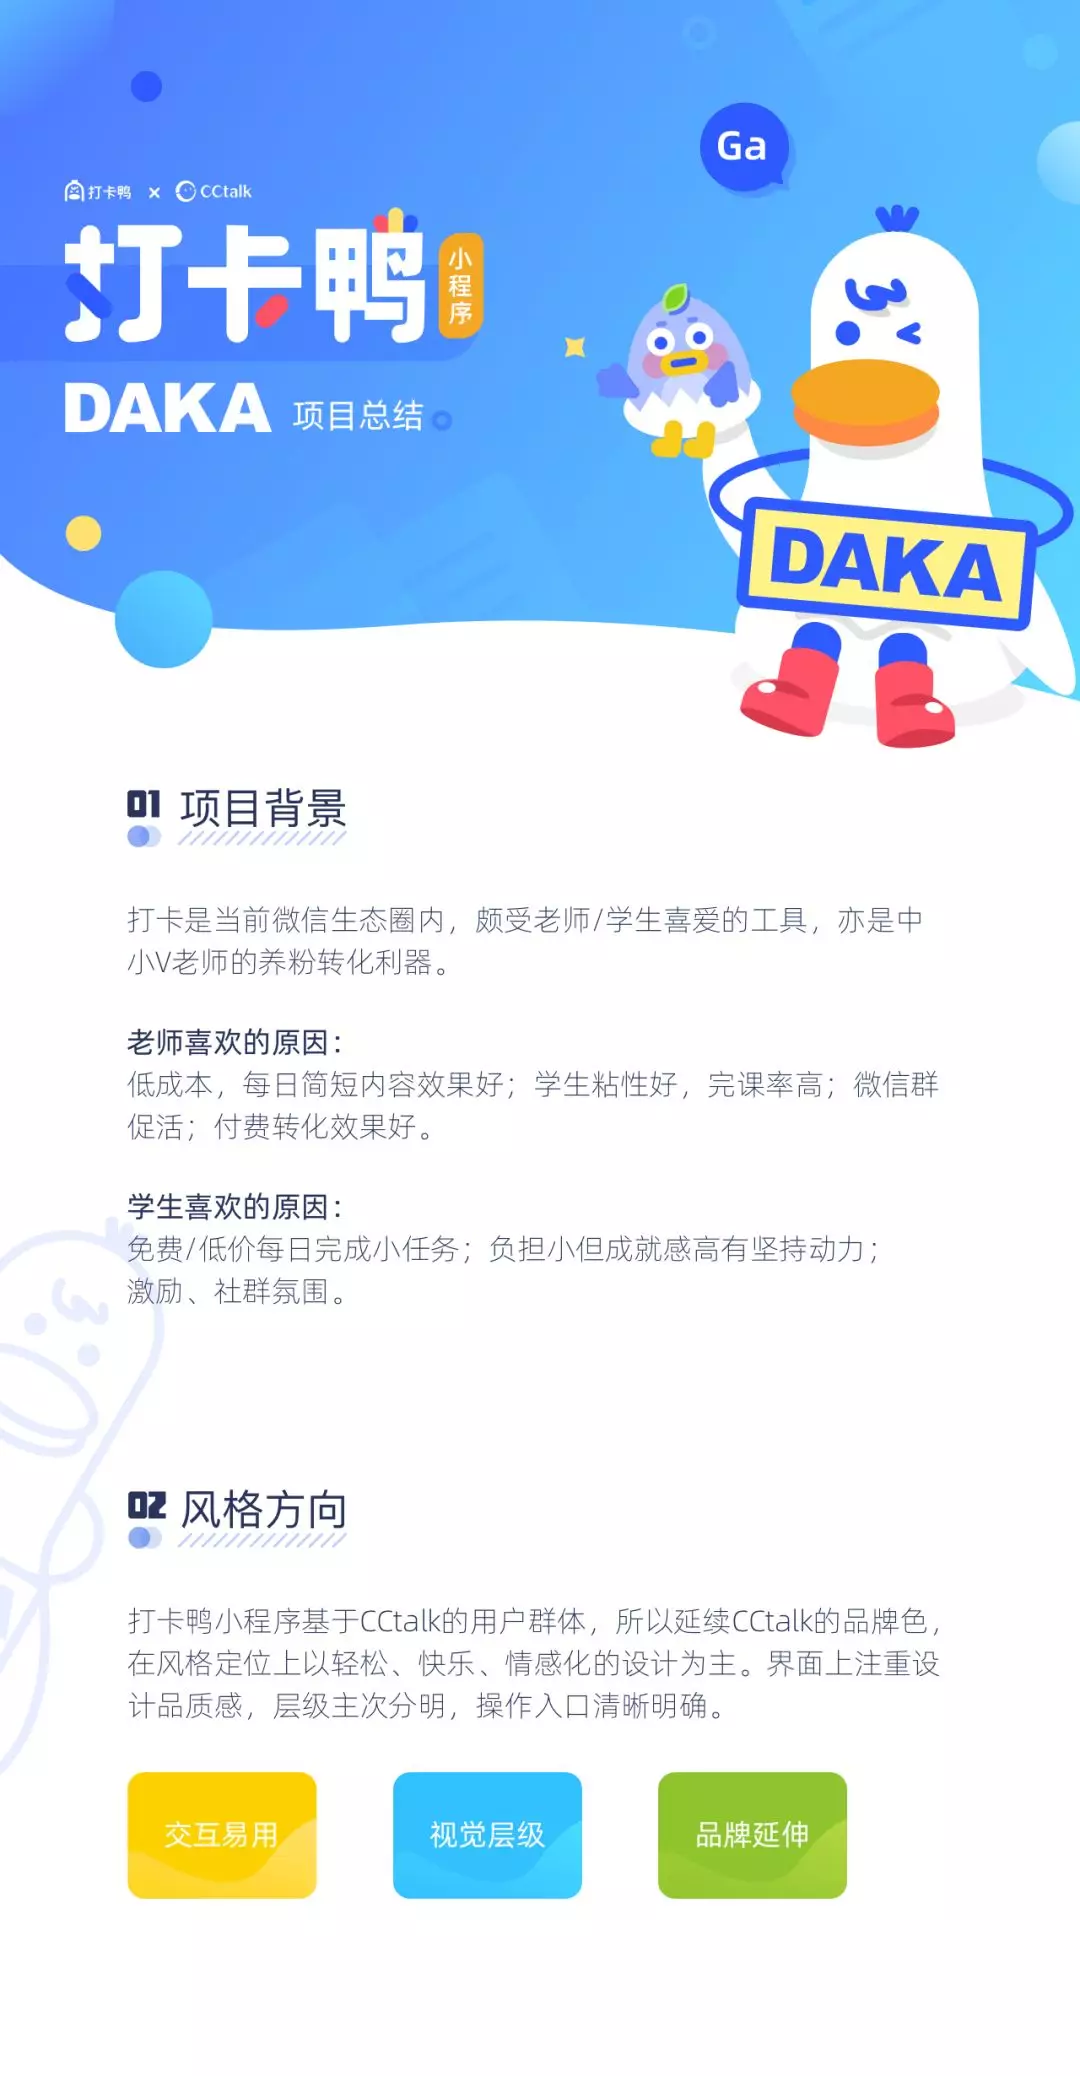 【沪江】CCtalk打卡鸭DAKA项目总结 - 图1